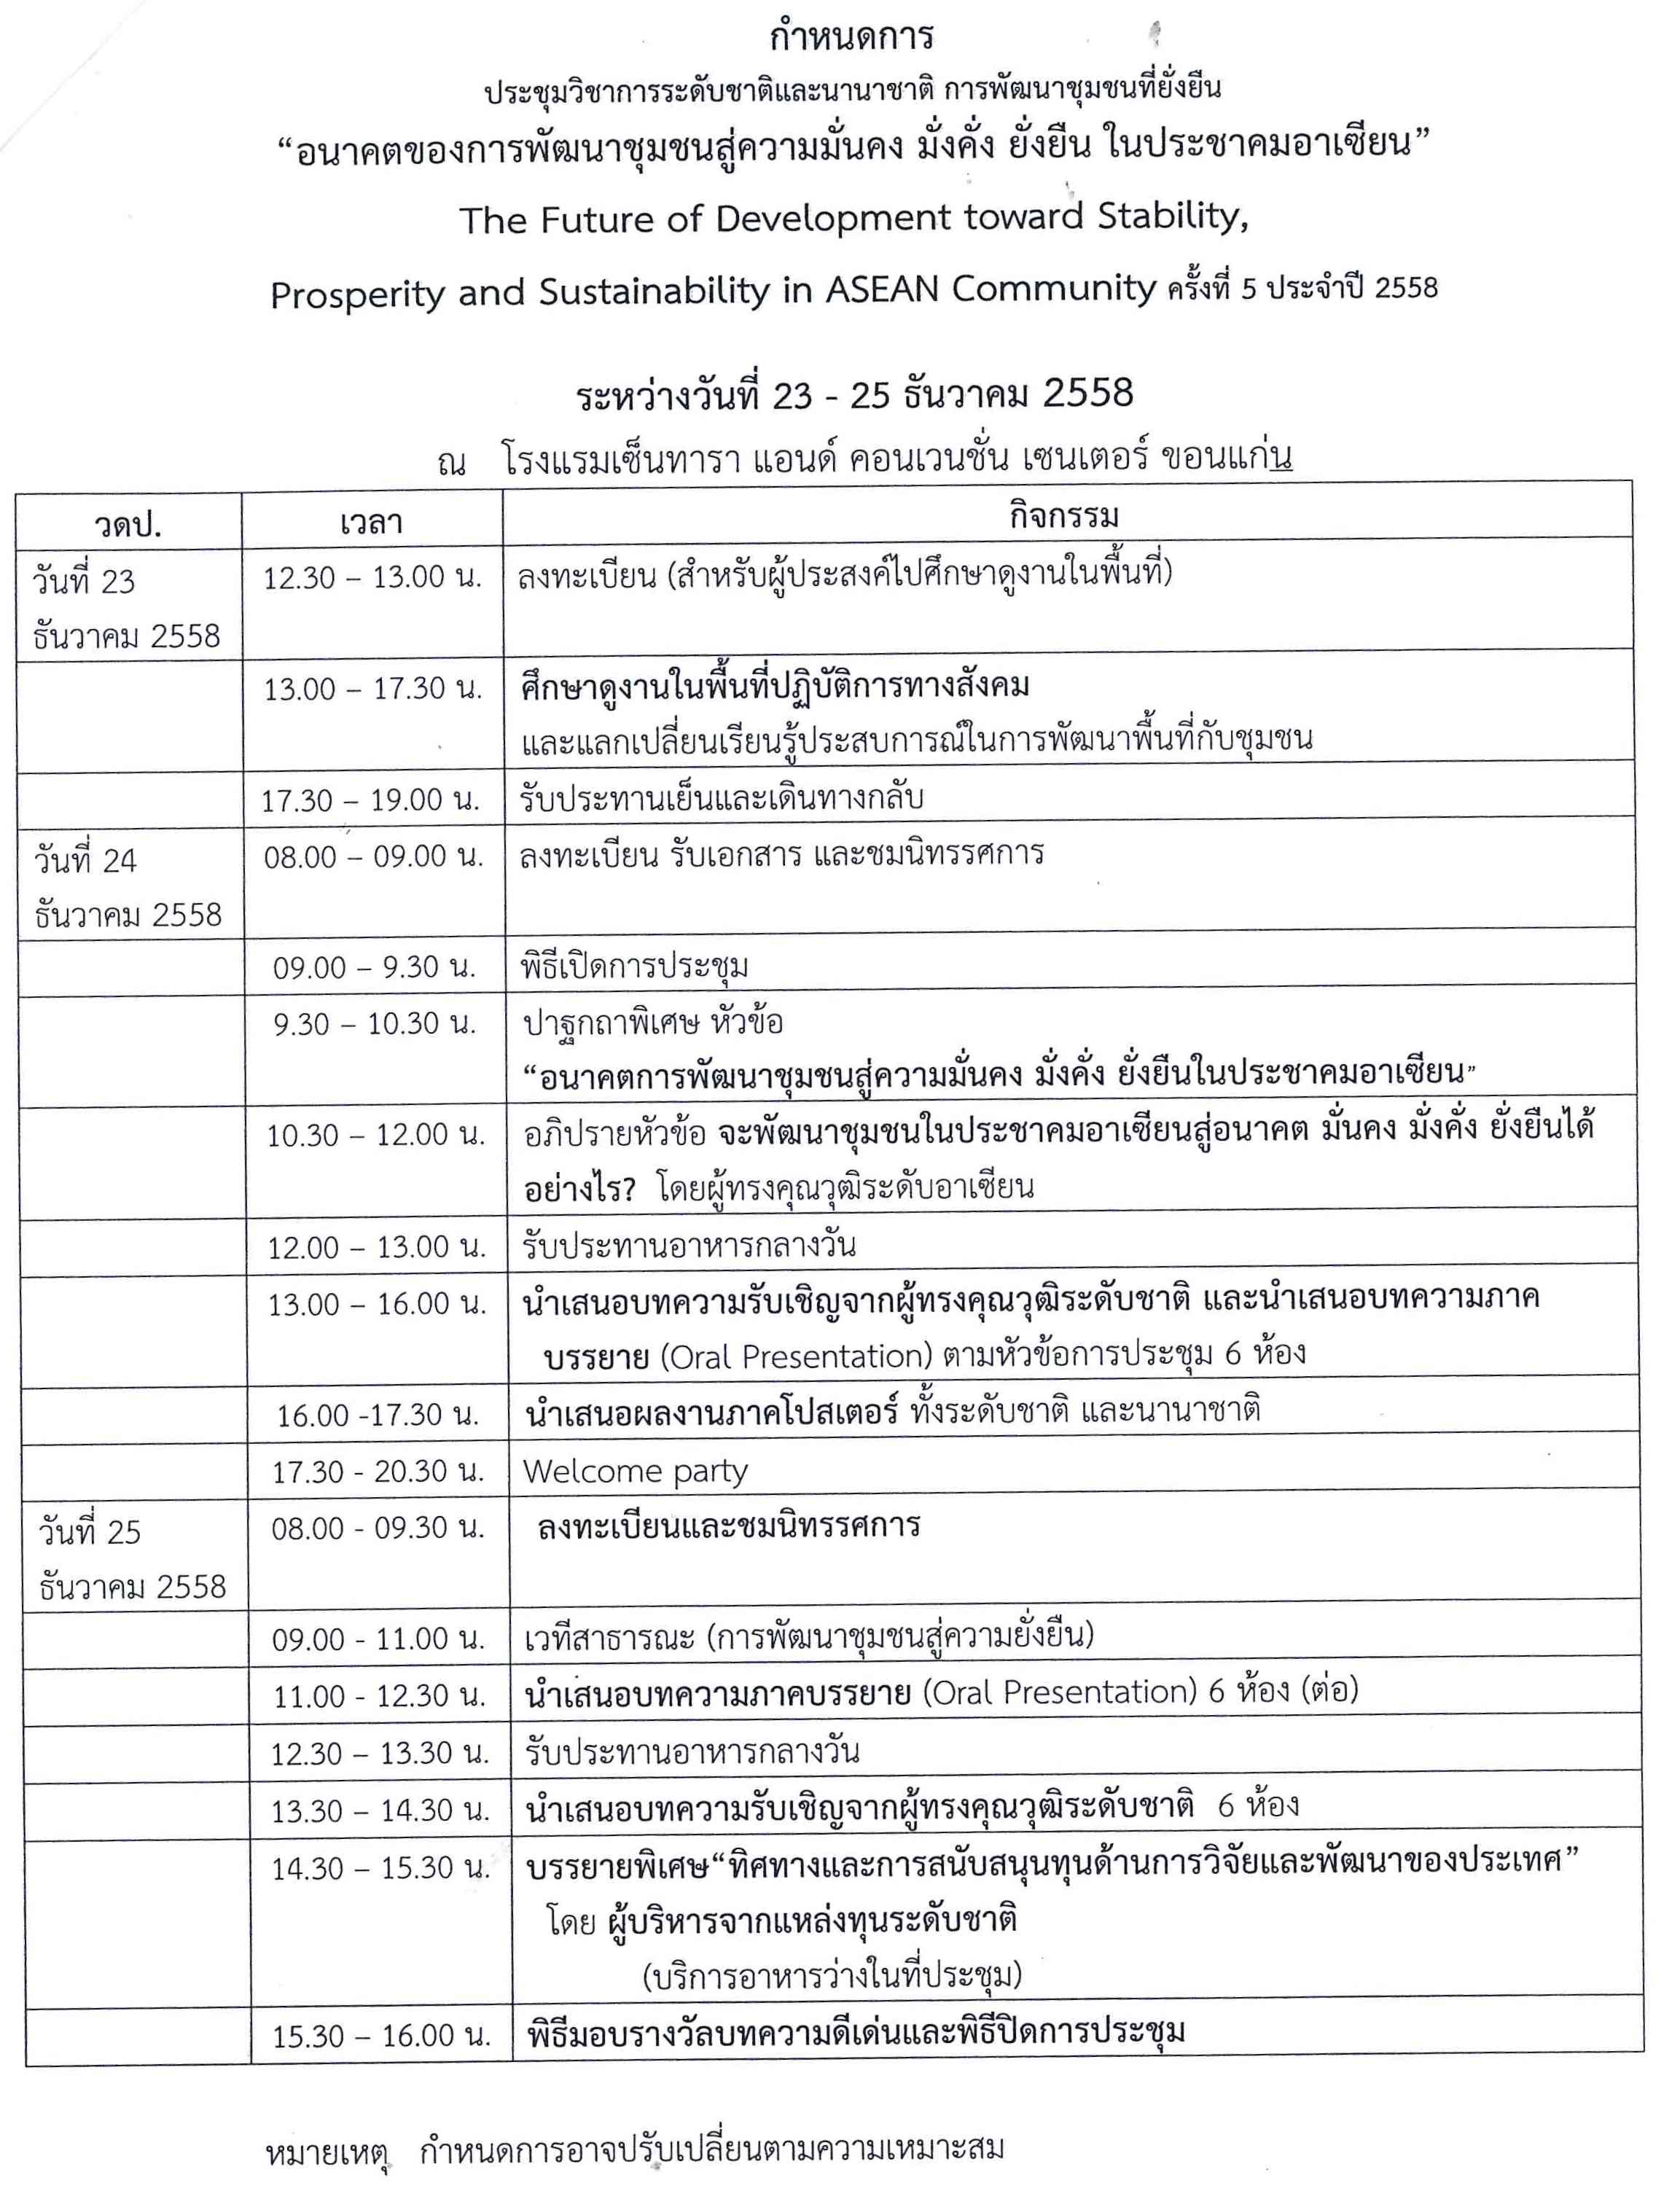 cscd2015 schedule